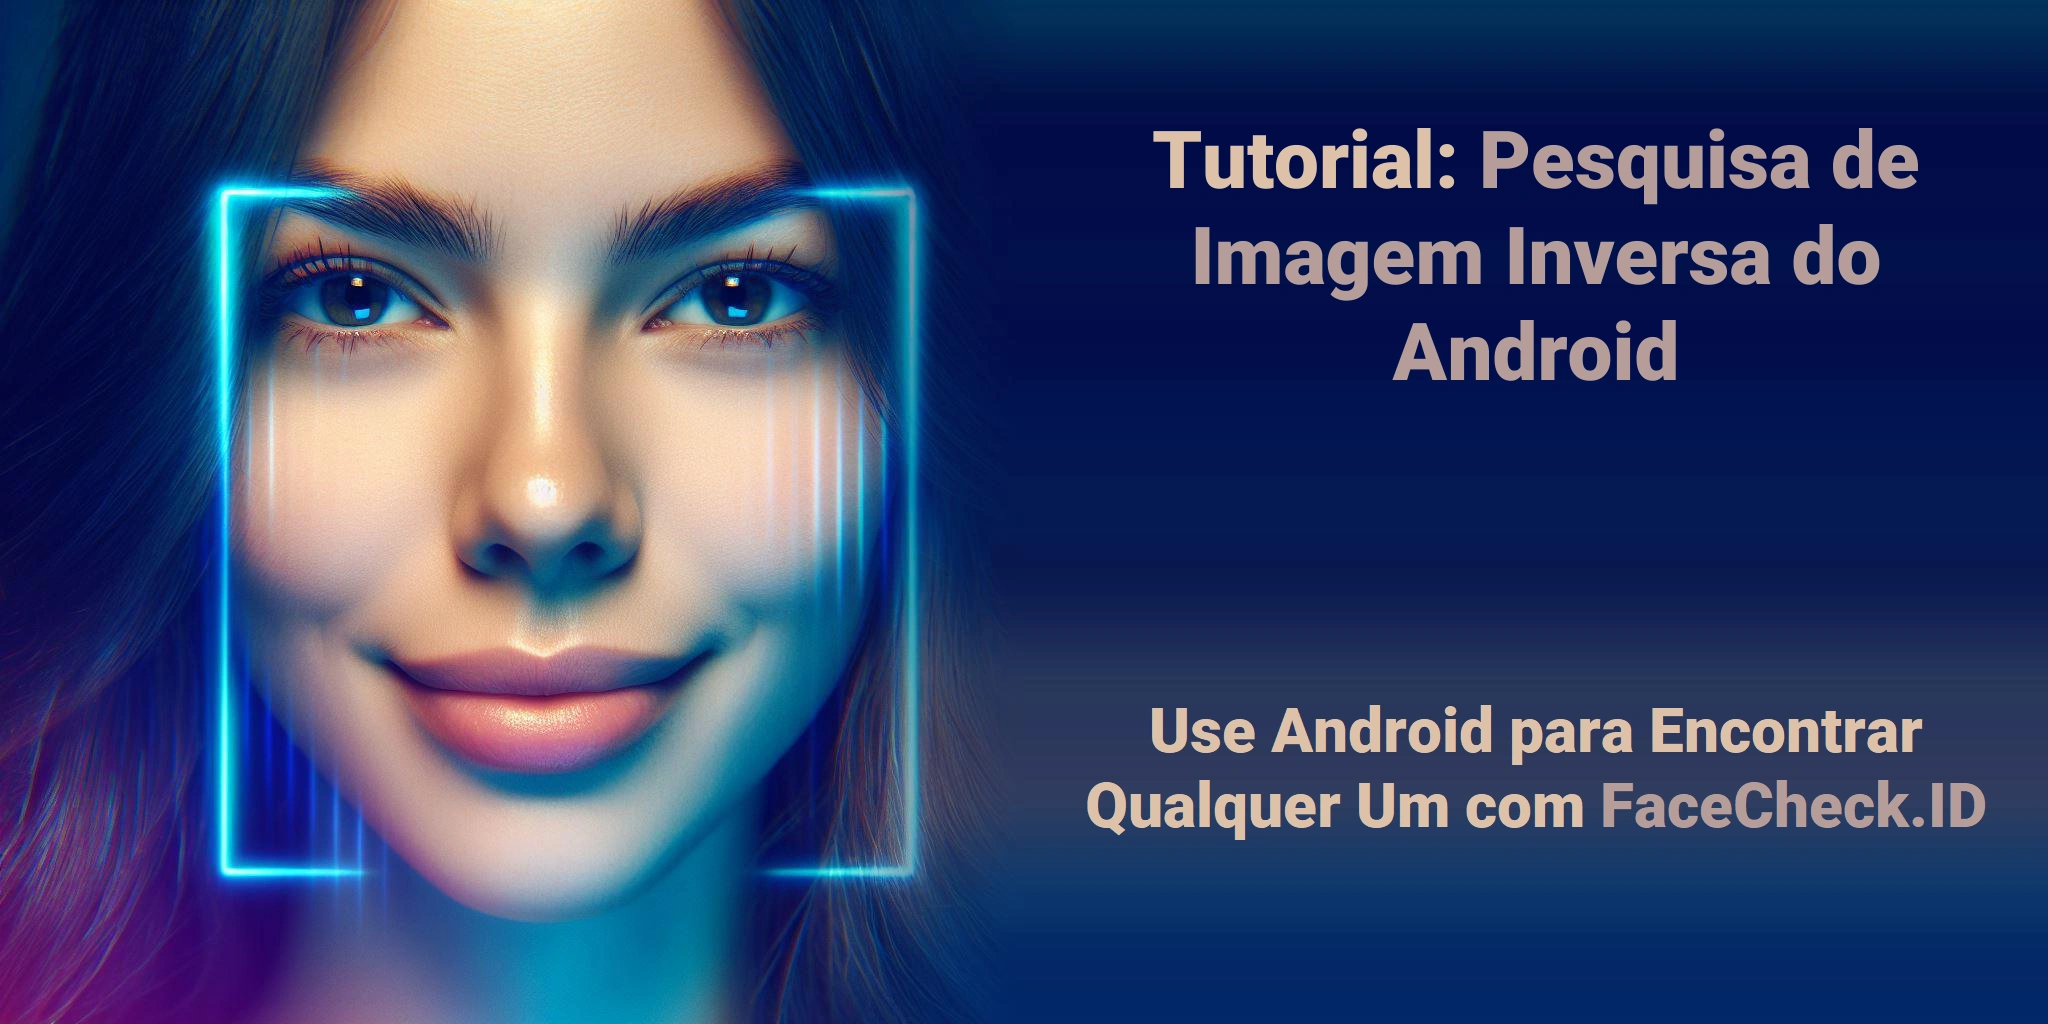 Tutorial: Pesquisa de Imagem Inversa do Android Use Android para Encontrar Qualquer Um com FaceCheck.ID